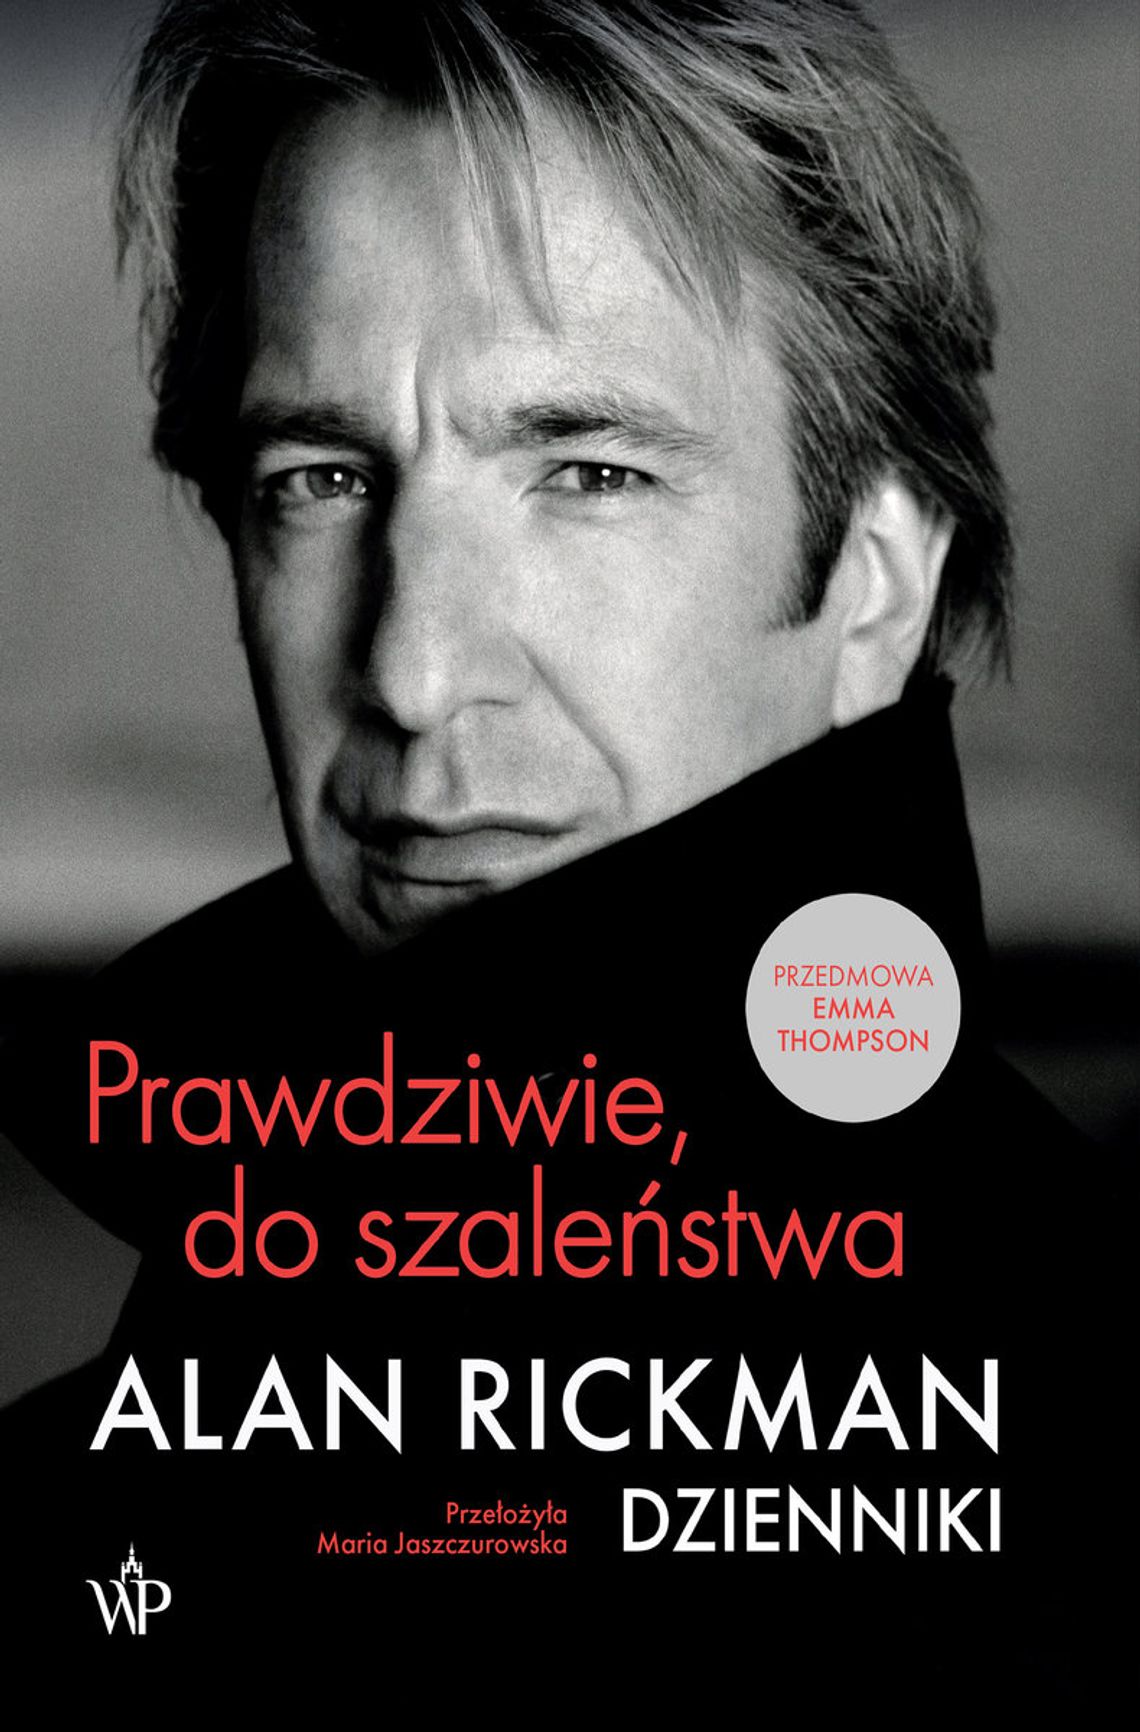 "Prawdziwie, do szaleństwa. Dzienniki" - Alan Rickman